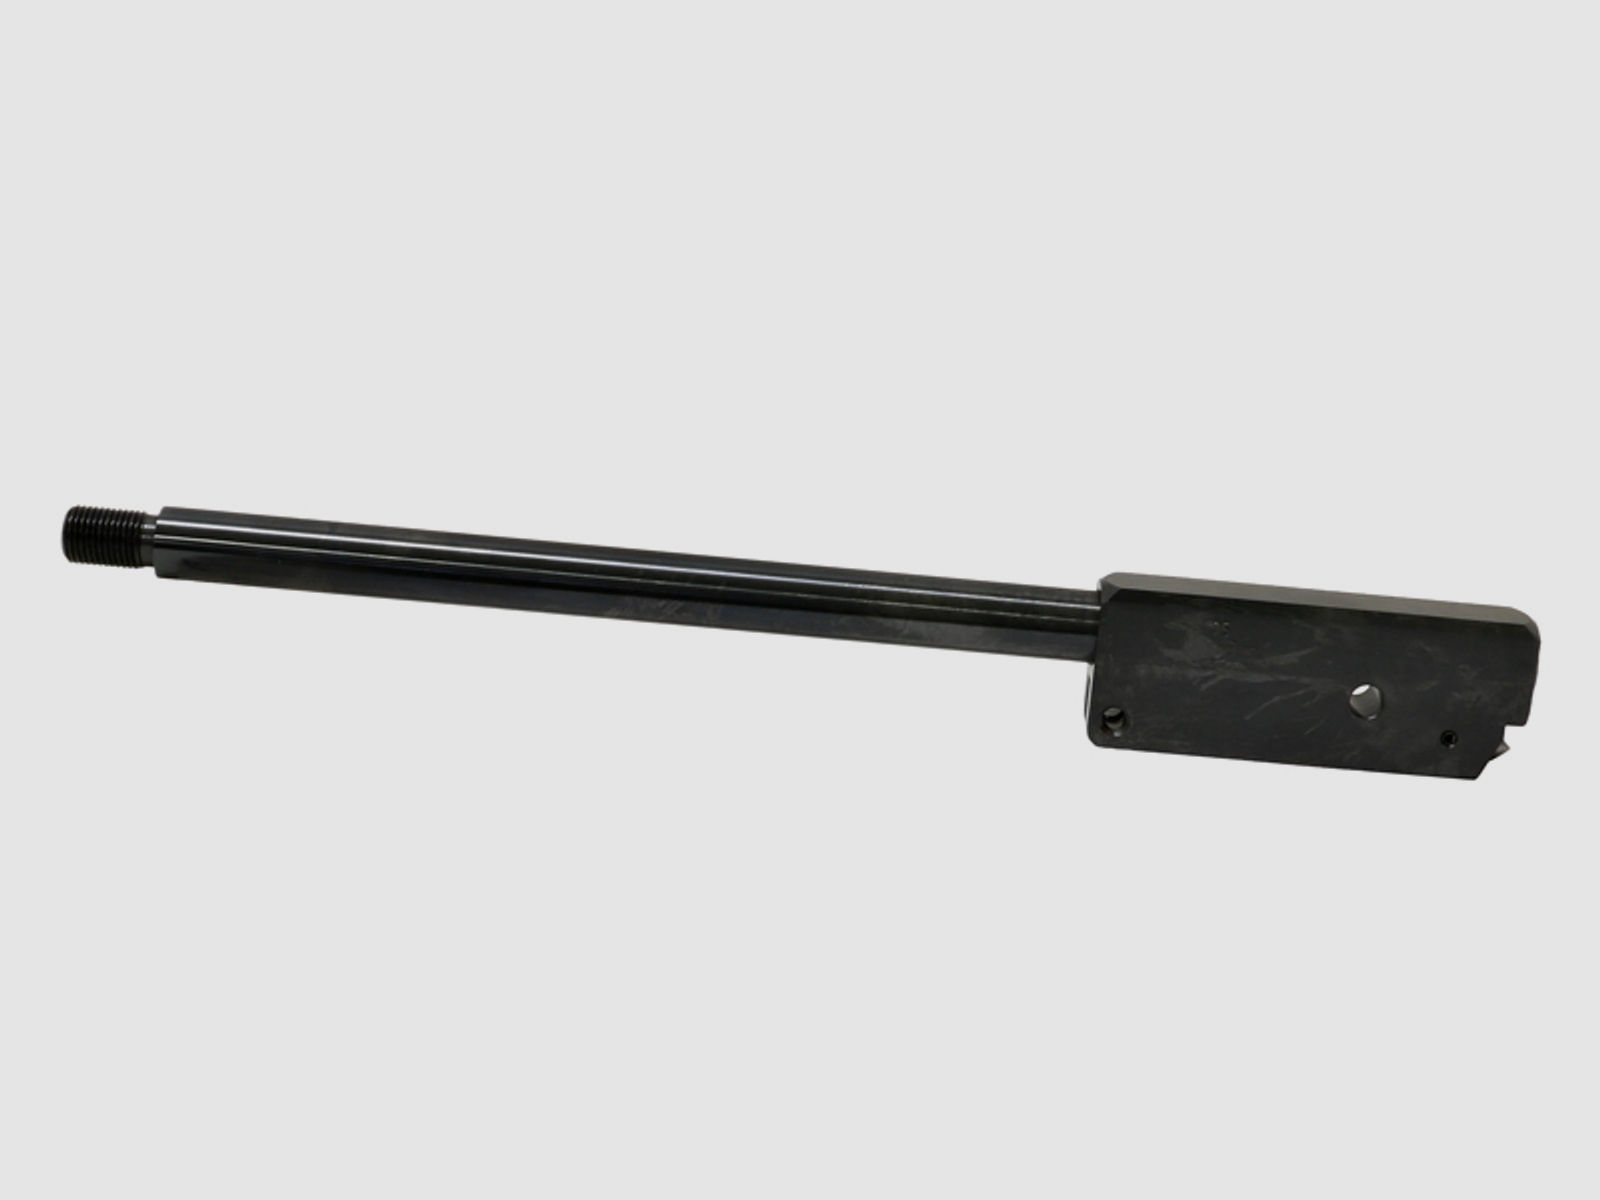 Wechsellauf mit SchalldĂ¤mpfergewinde fĂĽr Luftgewehr Weihrauch HW 95 LĂ¤nge 310 mm Kaliber 4,5 mm (P18)